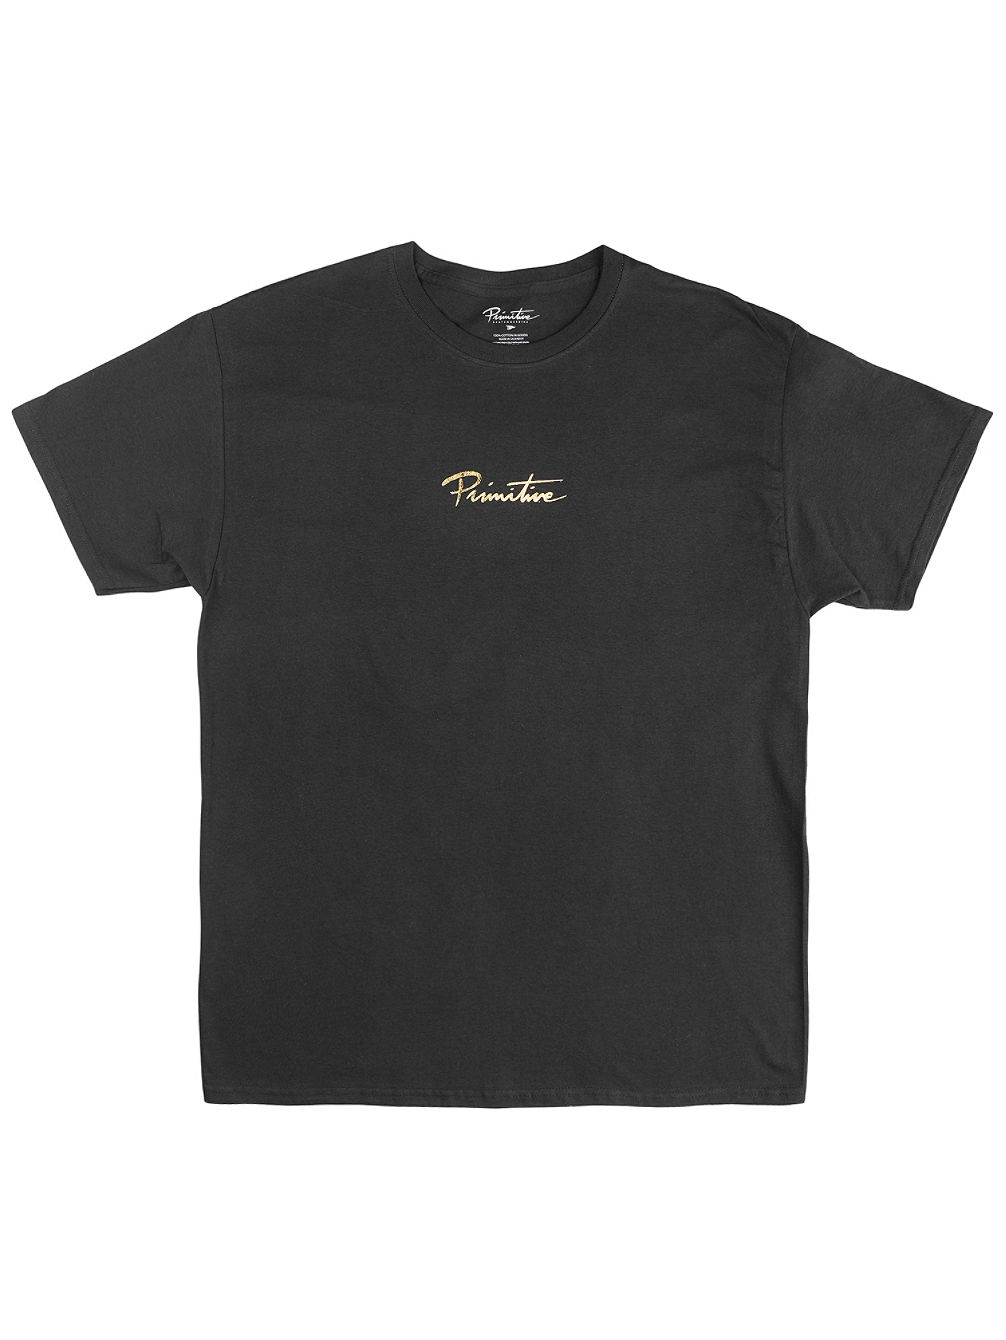 Mini Nuevo Gold Foil T-Shirt